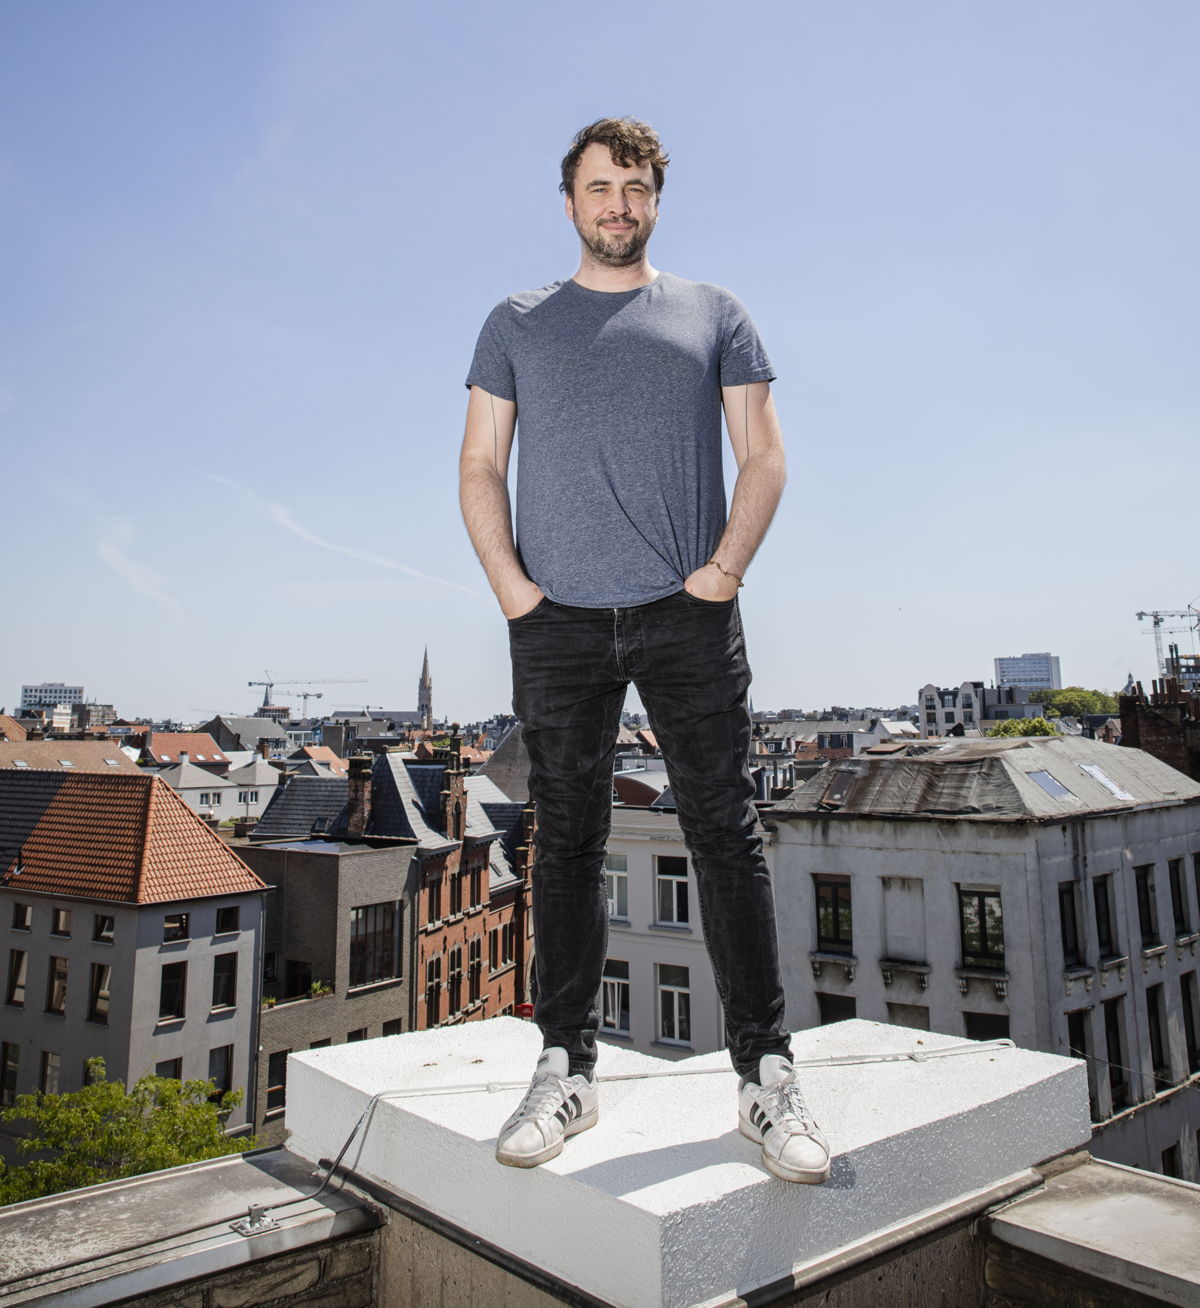 Lode Uytterschaut, CEO en founder 
Start it @KBC (credit Wim Kempenaers)